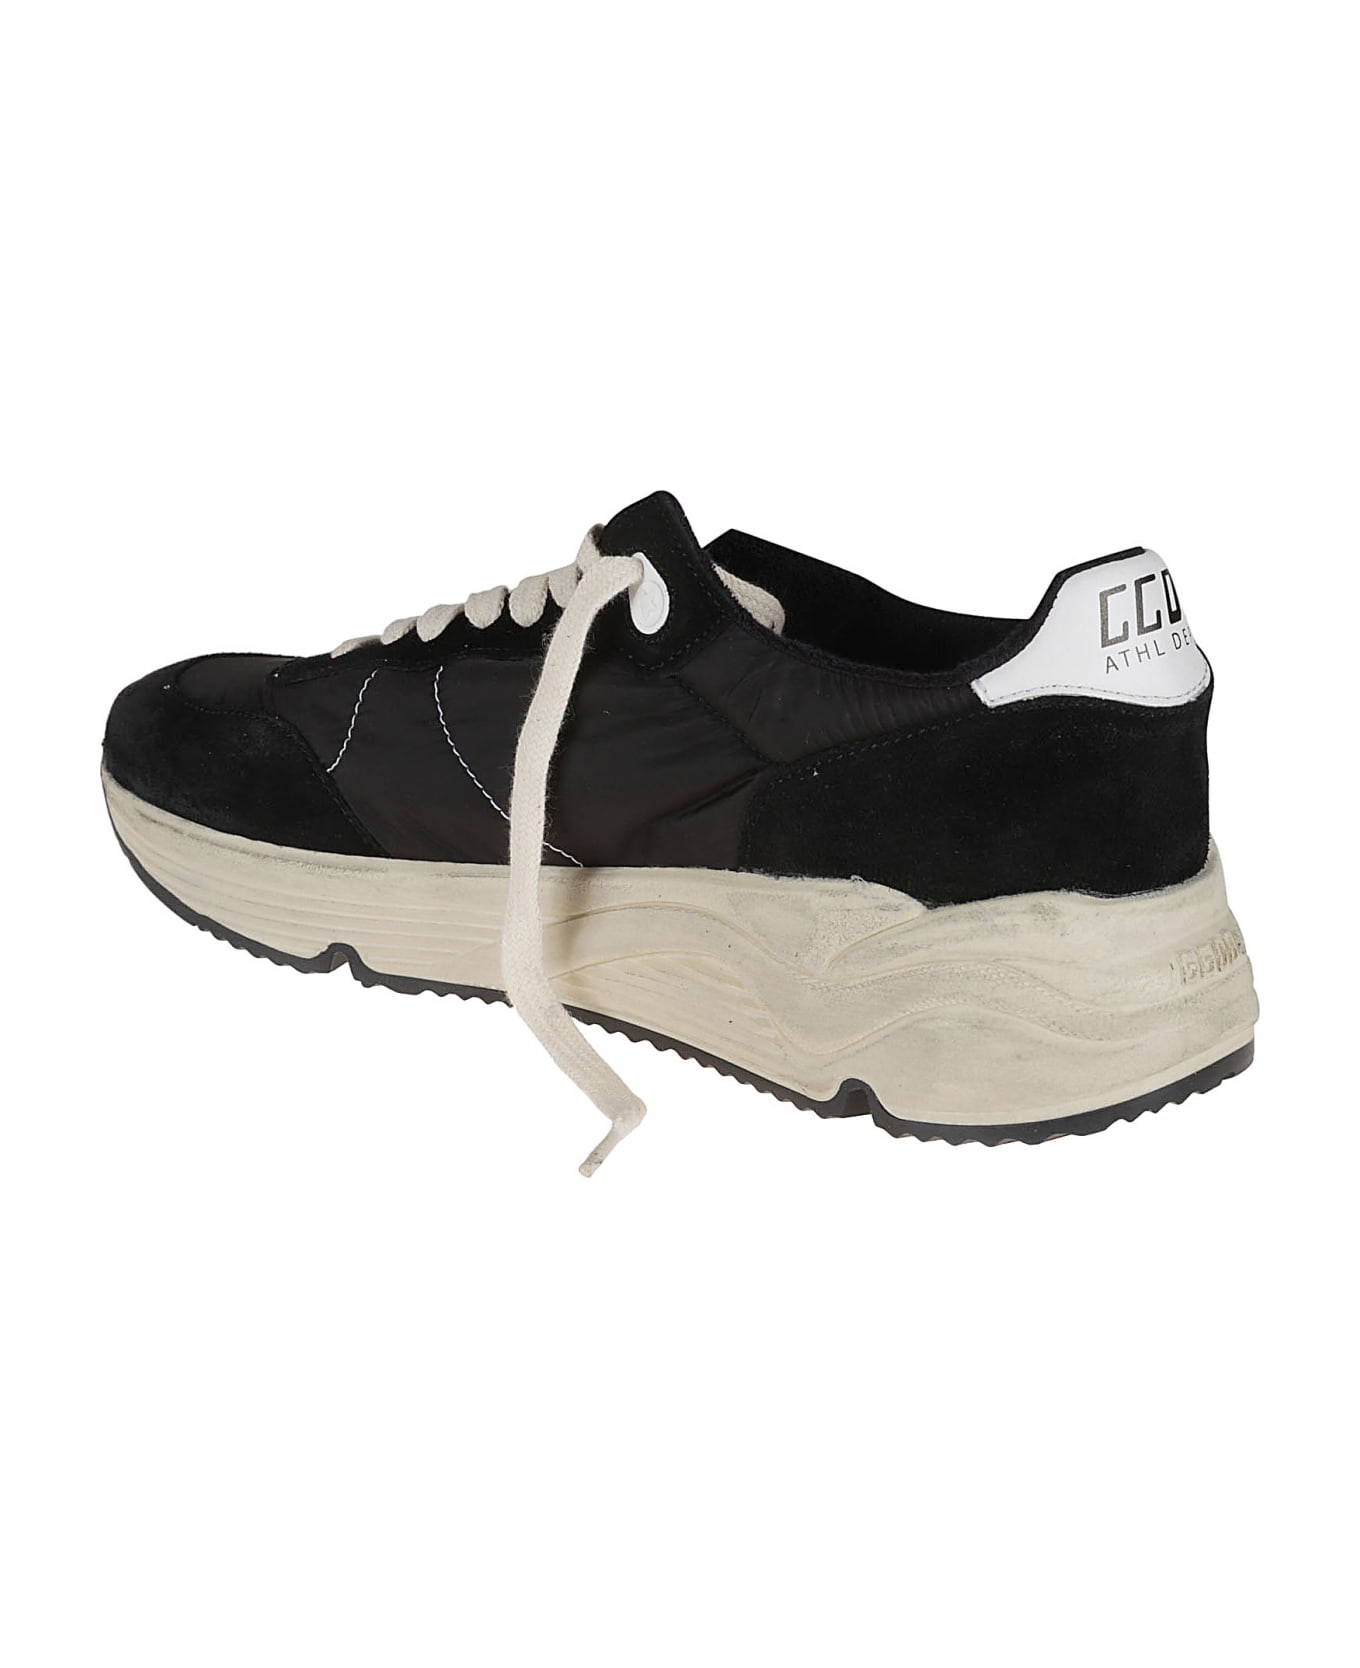 Golden Goose Running Sole Sneakers - Black/White スニーカー